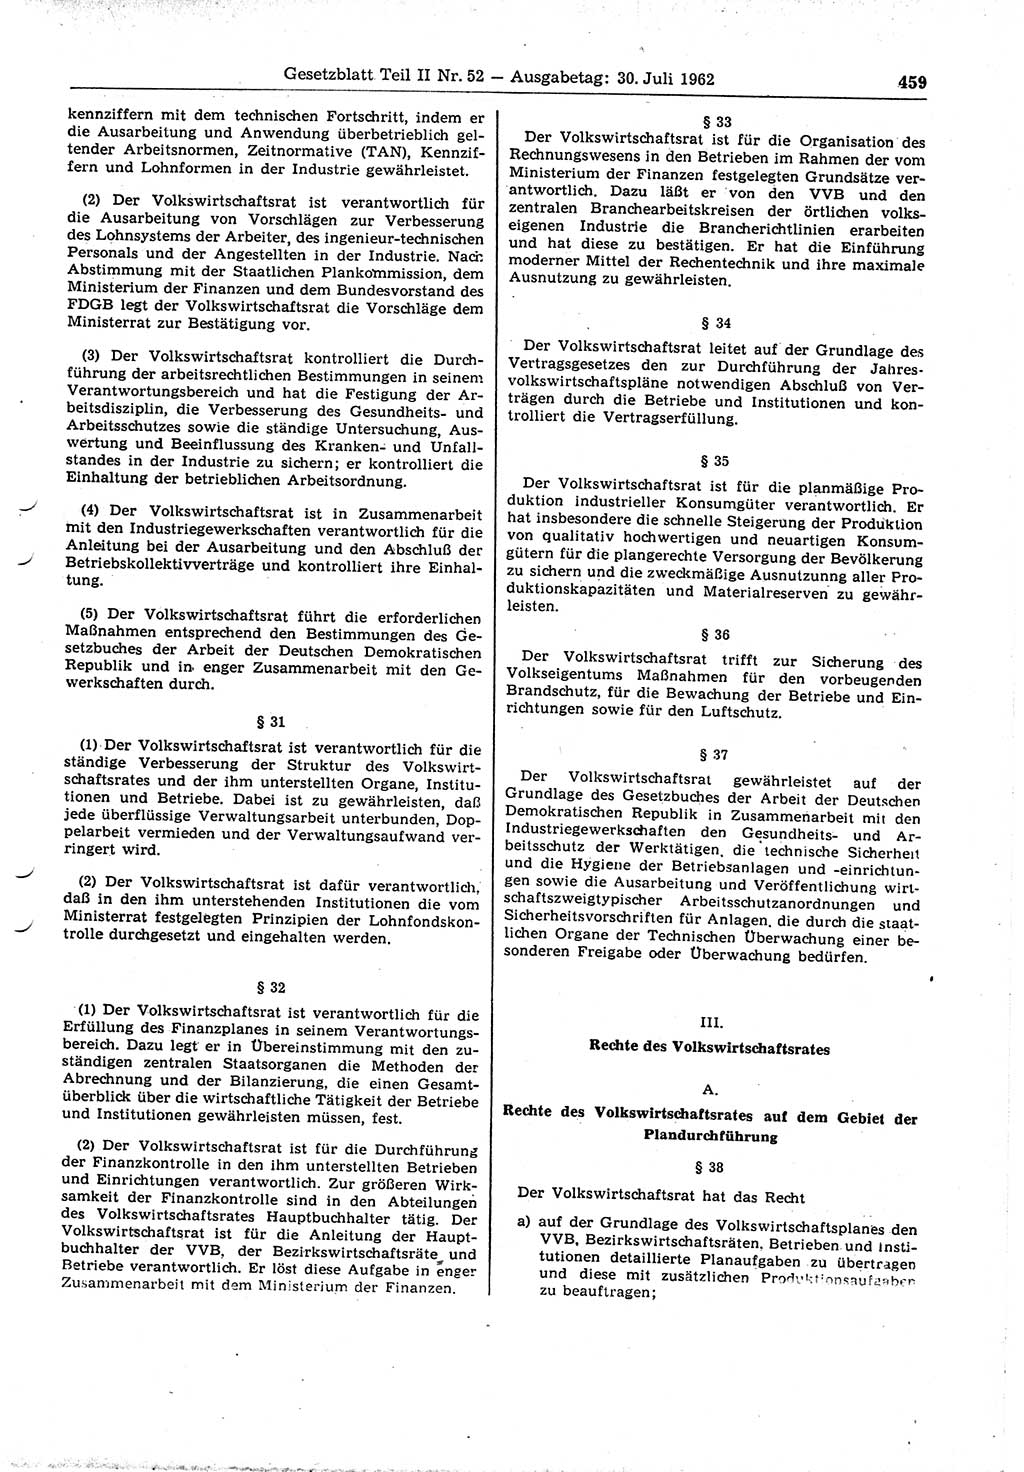 Gesetzblatt (GBl.) der Deutschen Demokratischen Republik (DDR) Teil ⅠⅠ 1962, Seite 459 (GBl. DDR ⅠⅠ 1962, S. 459)